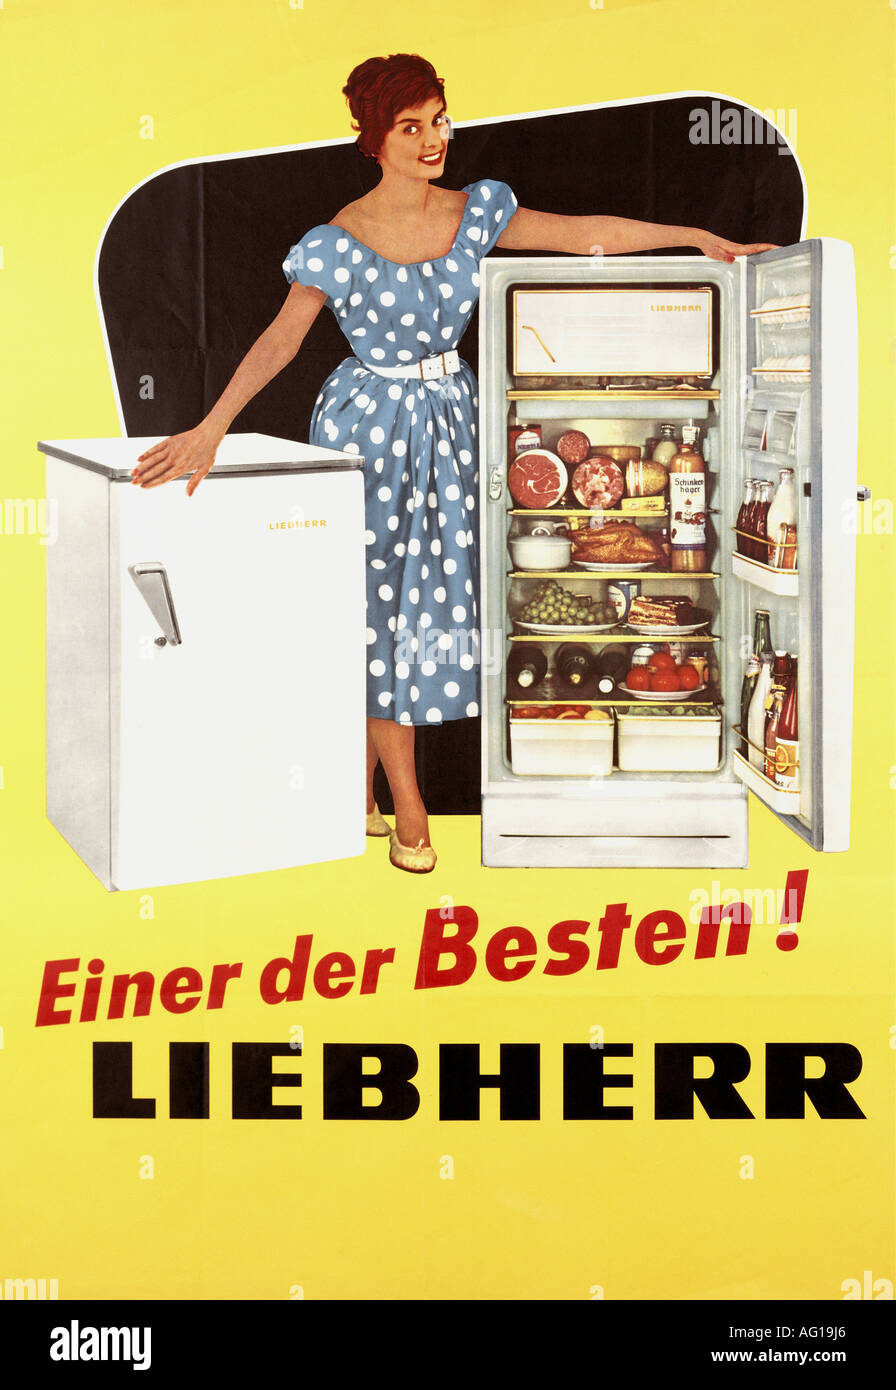 Werbung, Haushaltsgeräte, Kühlschränke, Liebherr, Plakat, 1950er Jahre  Stockfotografie - Alamy